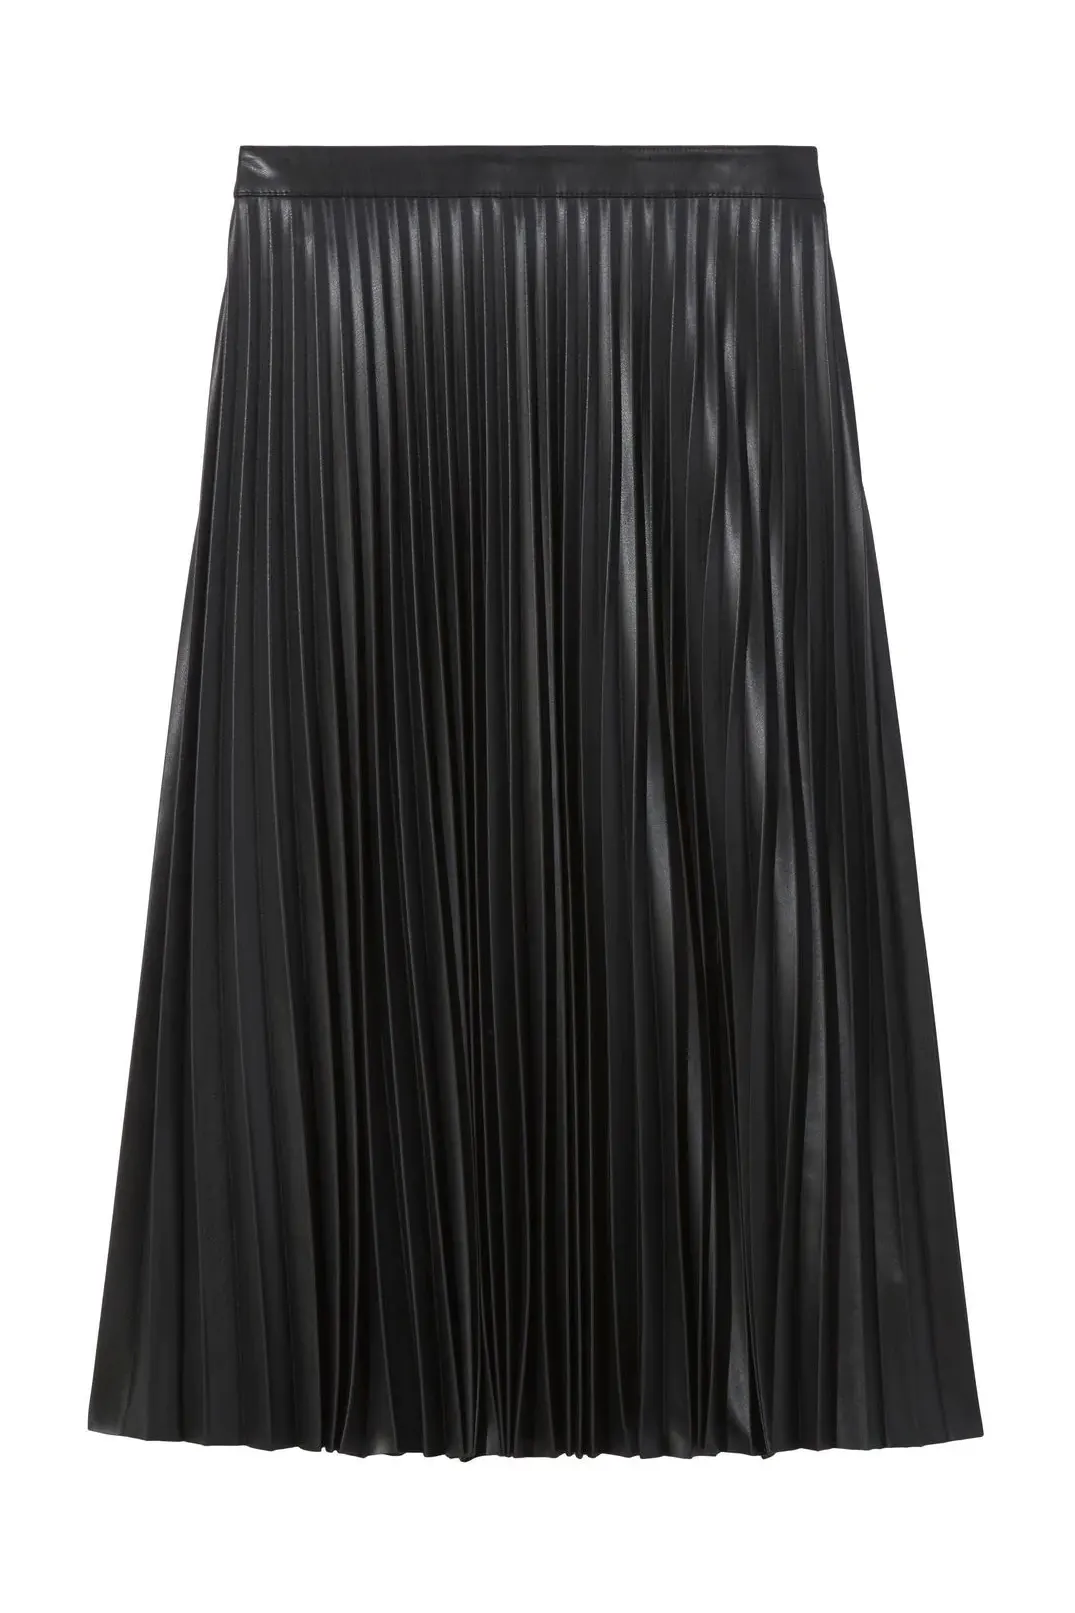 Vegan leather skirt, black